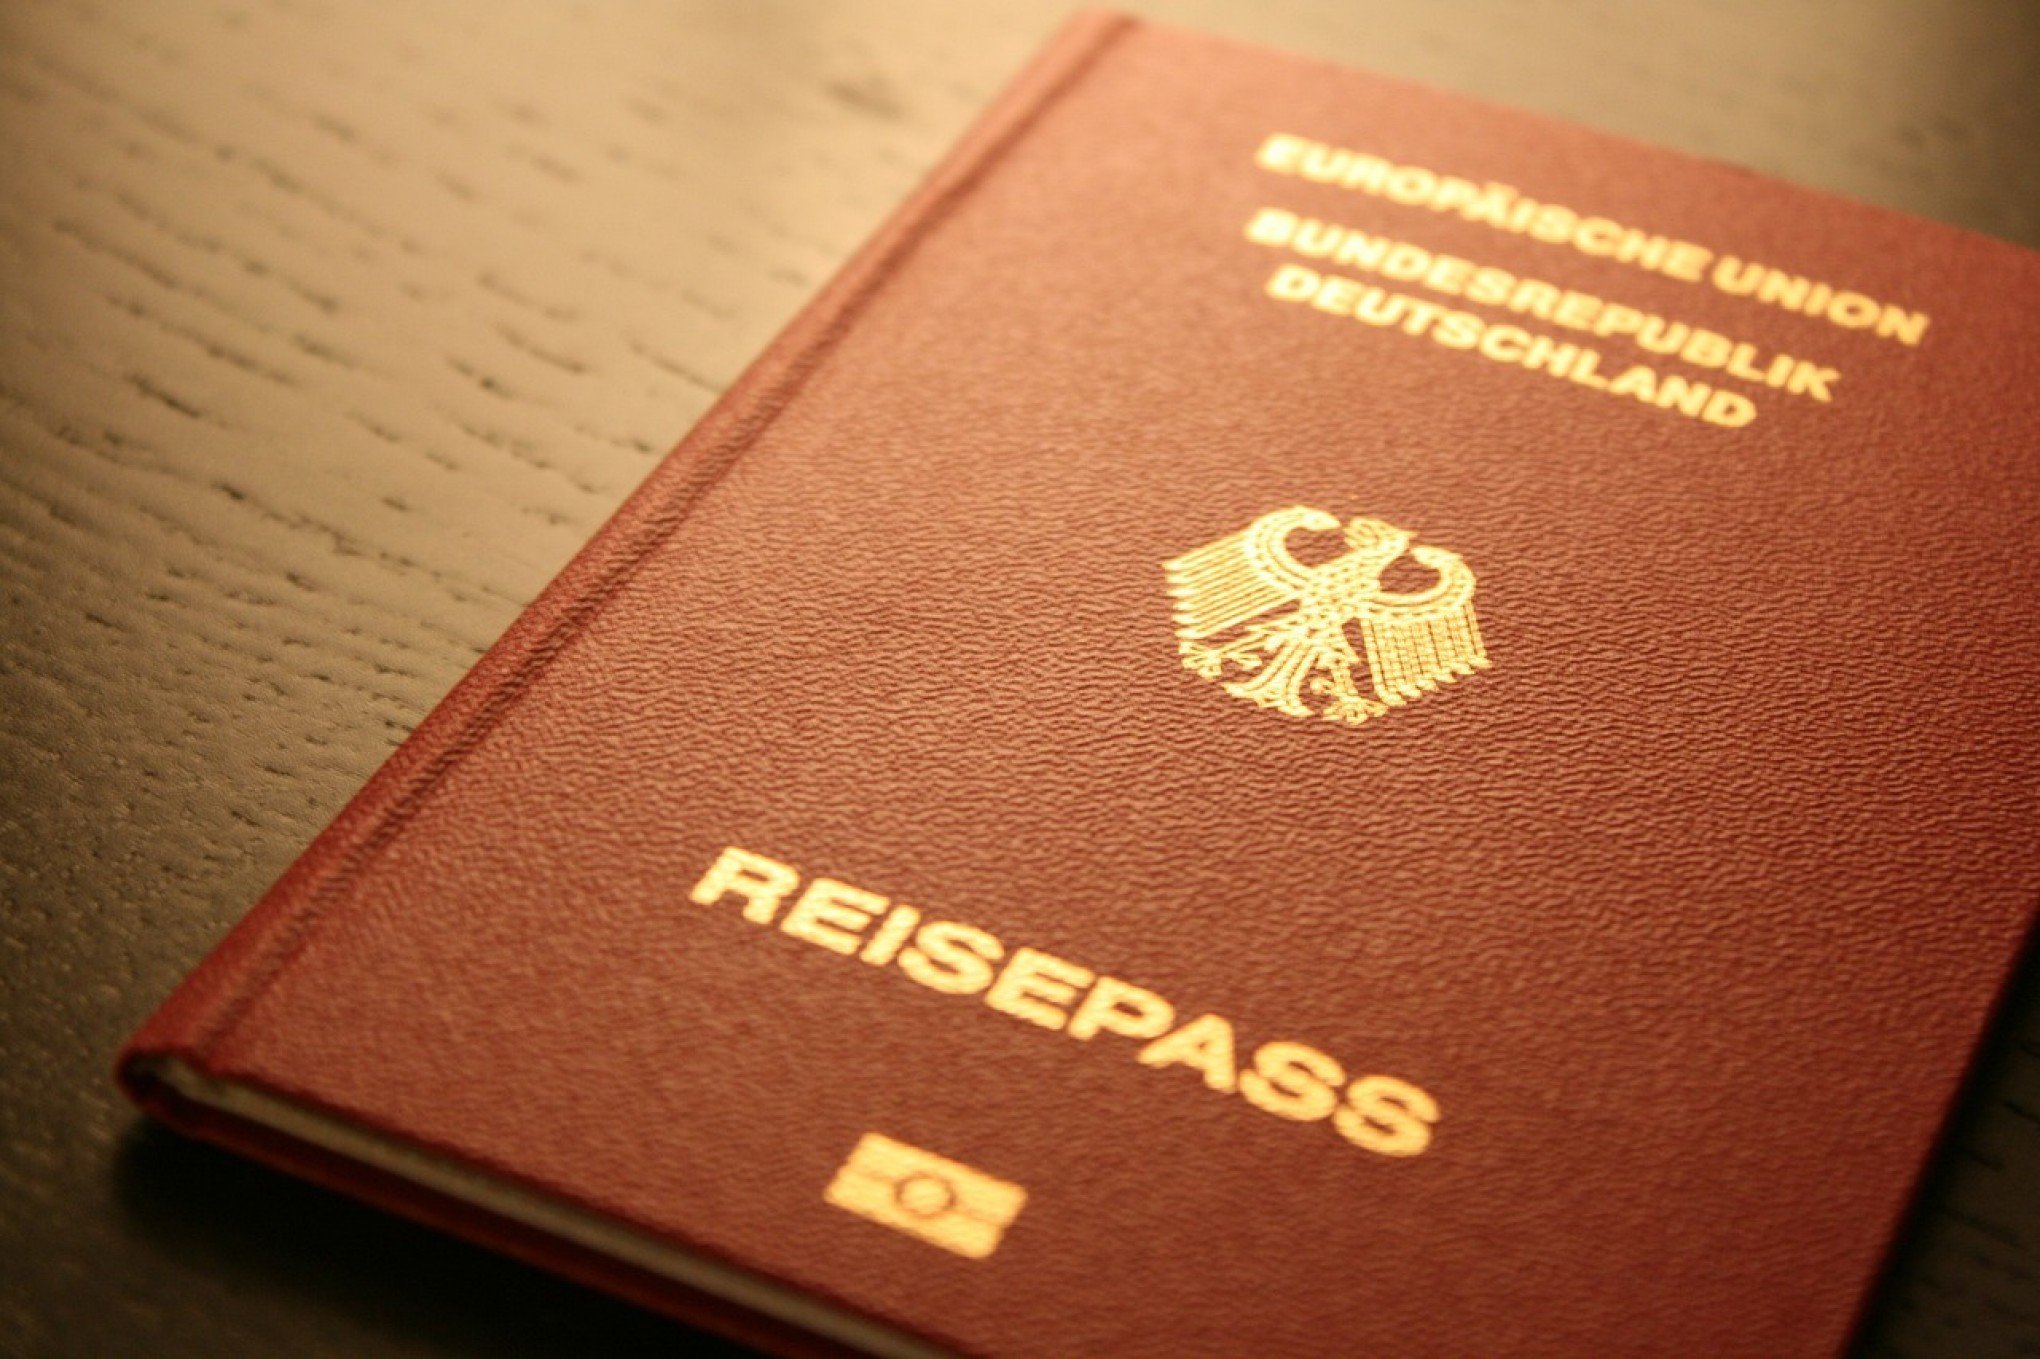 199 ANOS DE IMIGRAÇÃO: Como adquirir cidadania alemã